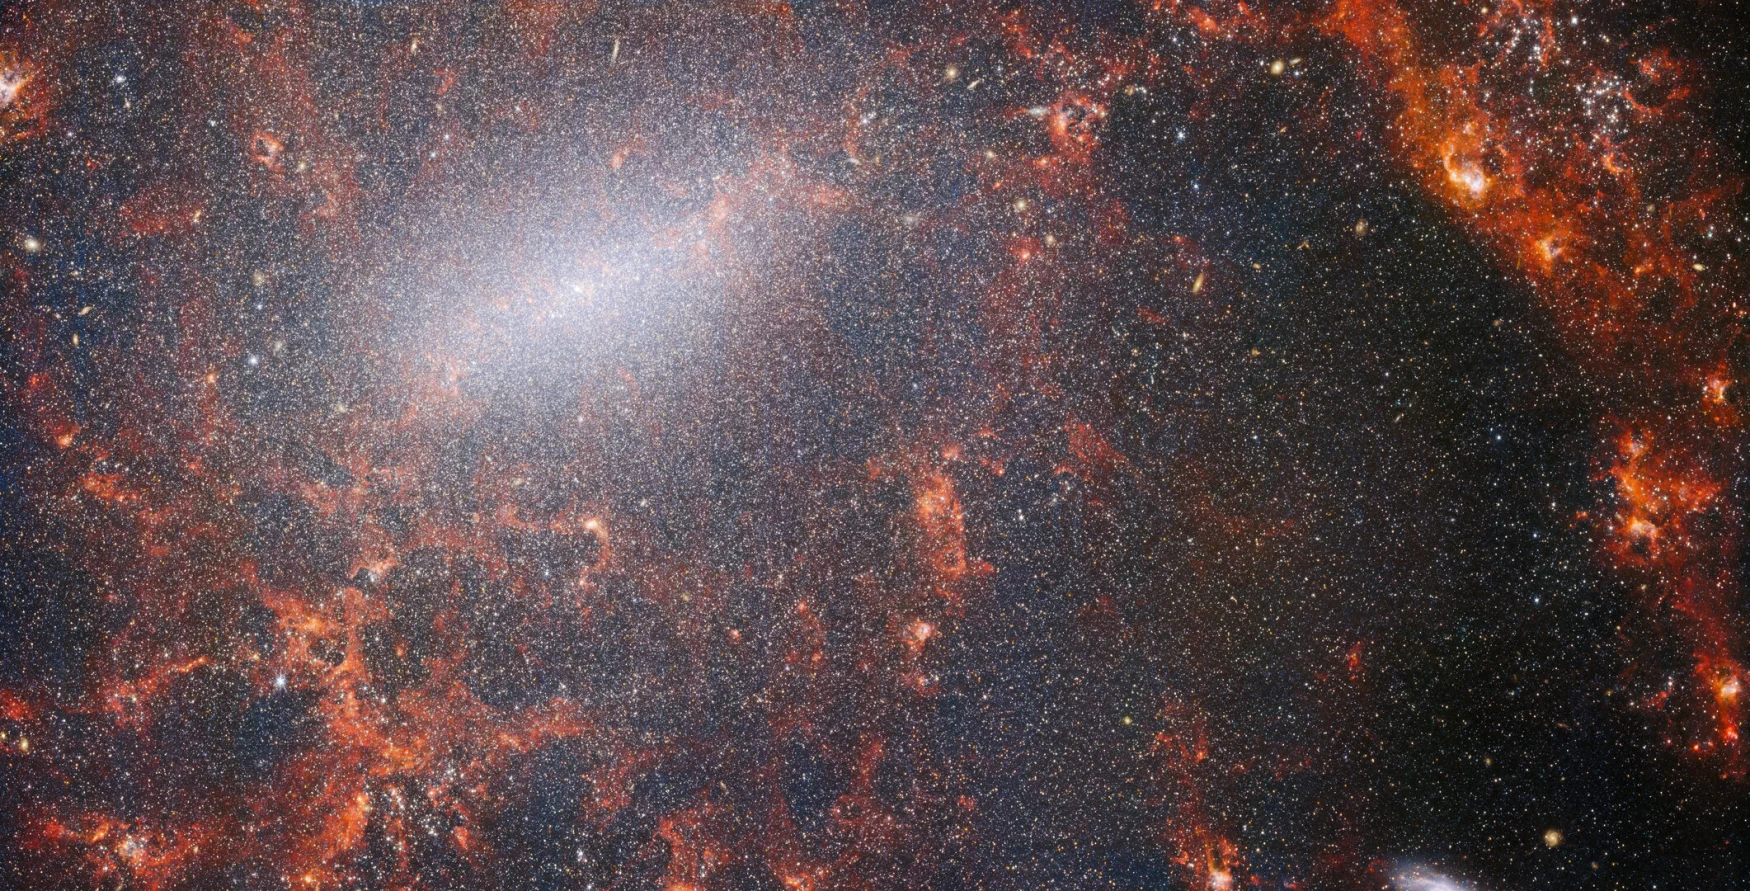 Auf diesem Bild des NASA/ESA/CSA-Weltraumteleskops James Webb sind feine Staubfäden und helle Sternhaufen zu sehen.  Diese Ansicht von Webbs NIRCam-Instrument ist übersät mit dem massiven Sternhaufen der Galaxie, der am dichtesten entlang seines hellen Mittelstreifens gepackt ist, sowie mit leuchtend roten Gaswolken, die von den jungen Sternen darin beleuchtet werden.  Diese funkelnden Sterne gehören zur Balkenspiralgalaxie NGC 5068, die etwa 17 Millionen Lichtjahre von der Erde entfernt im Sternbild Jungfrau liegt.  Dieses Bild von NGC 5068 ist Teil einer Kampagne zur Schaffung einer astronomischen Schatzkammer, einer Sammlung für Beobachtungen der Sternentstehung in nahegelegenen Galaxien.  Frühere Juwelen dieser Sammlung können Sie hier und hier sehen.  Diese Beobachtungen sind für Astronomen aus zwei Gründen besonders wertvoll.  Das erste ist, dass die Sternentstehung vielen Bereichen der Astronomie zugrunde liegt, von der Physik schwacher interstellarer Plasmen bis hin zur Entwicklung ganzer Galaxien.  Durch die Beobachtung der Sternentstehung in nahegelegenen Galaxien hoffen Astronomen, mit einigen der ersten von Webb verfügbaren Daten einen großen wissenschaftlichen Fortschritt zu erzielen.  Der zweite Grund ist, dass Webbs Beobachtungen auf anderen Studien mit Teleskopen basieren, darunter dem Hubble-Weltraumteleskop der NASA/ESA und einigen der leistungsfähigsten bodengestützten Observatorien der Welt.  Webb sammelte Bilder von 19 nahegelegenen Sternentstehungsgalaxien, die Astronomen dann mit Hubbles Katalogen von 10.000 Sternhaufen kombinieren konnten, kartierte 20.000 Sternemissionsnebel vom Very Large Telescope (VLT) spektral und beobachtete 12.000 dunkle Nebel.  , dichte Molekülwolken, die vom Atacama Large Millimeter/Submillimeter Array (ALMA) identifiziert wurden.  Diese Beobachtungen umfassen das elektromagnetische Spektrum und bieten Astronomen eine beispiellose Gelegenheit, die Details der Sternentstehung herauszufinden.  Dieses Nahinfrarotbild der Galaxie ist mit der massiven Ansammlung alter Sterne gefüllt, die den Kern von NGC 5068 bilden. Die scharfe Sicht der NIRCam ermöglicht es Astronomen, durch das Gas und den Staub der Galaxie zu blicken, um ihre Sterne genauer zu untersuchen.  Entlang der Bahn der Spiralarme liegen dichte, helle Staubwolken: Dies sind H-II-Regionen, Ansammlungen von Wasserstoffgas, in denen sich neue Sterne bilden.  Aktive, energiereiche Sterne ionisieren den sie umgebenden Wasserstoff, der in Kombination mit der Emission von heißem Staub dieses rötliche Leuchten erzeugt.  H-II-Regionen sind ein großartiges Ziel für Astronomen, und Webbs Instrumente sind die perfekten Werkzeuge, um sie zu untersuchen. Das Ergebnis ist dieses Bild. [Image Description: A close-in image of a spiral galaxy, showing its core and part of a spiral arm. At this distance thousands upon thousands of tiny stars that make up the galaxy can be seen. The stars are most dense in a whitish bar that forms the core, and less dense out from that towards the arm. Bright red gas clouds follow the twist of the galaxy and the spiral arm.] Links NGC 5068 (NIRCam + MIRI-Bild) 